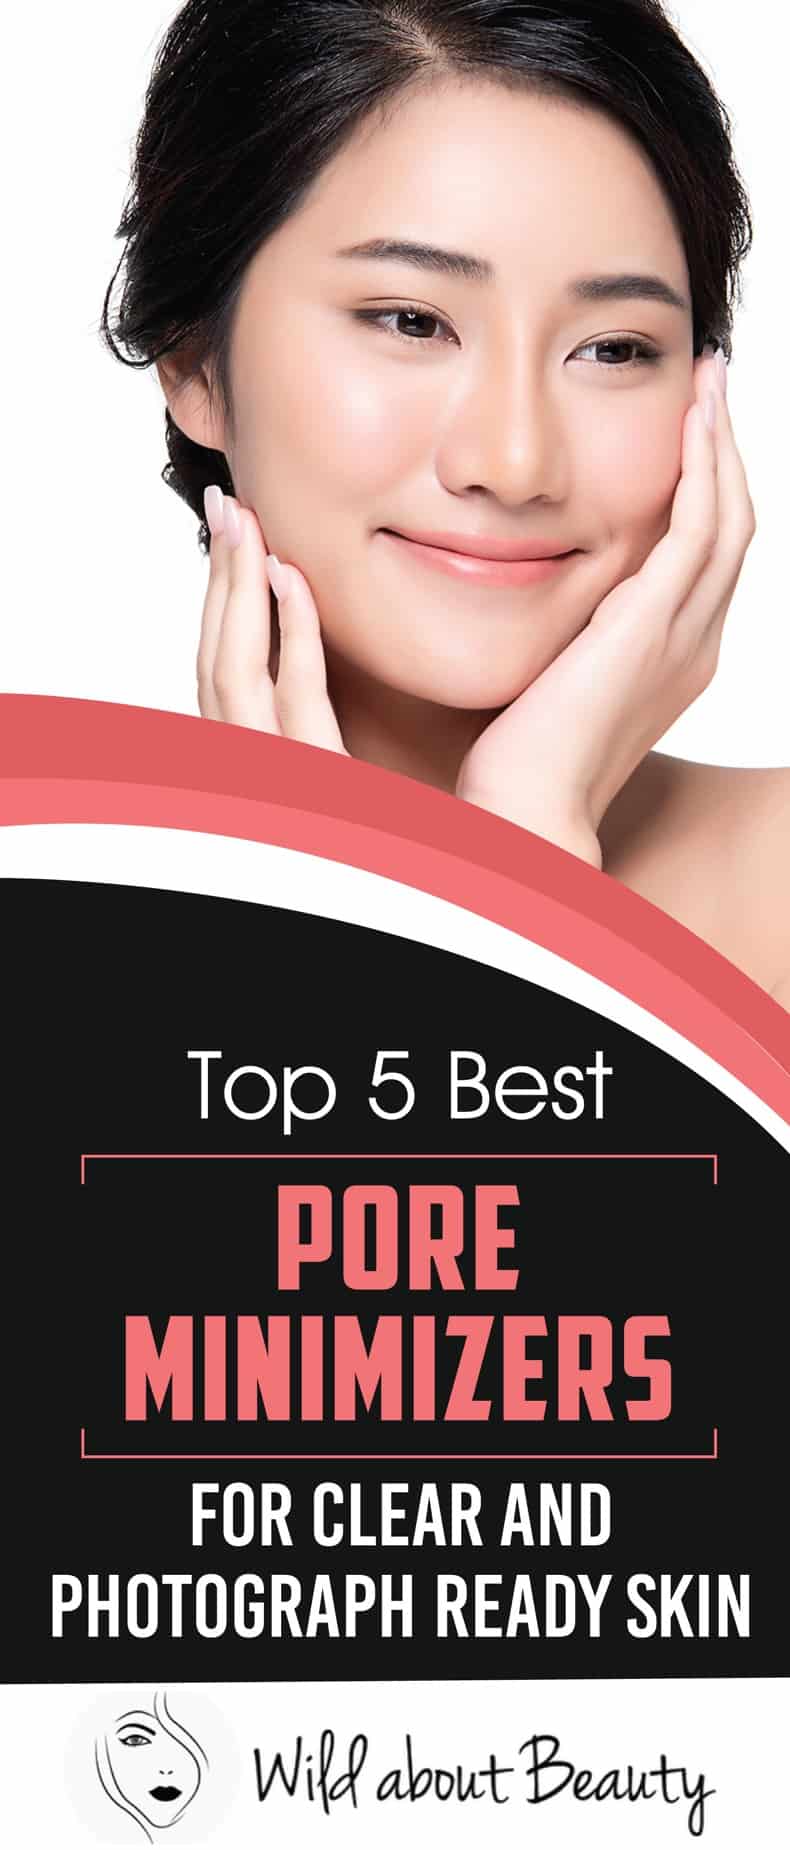 Top 5 Best Pore Minimizers